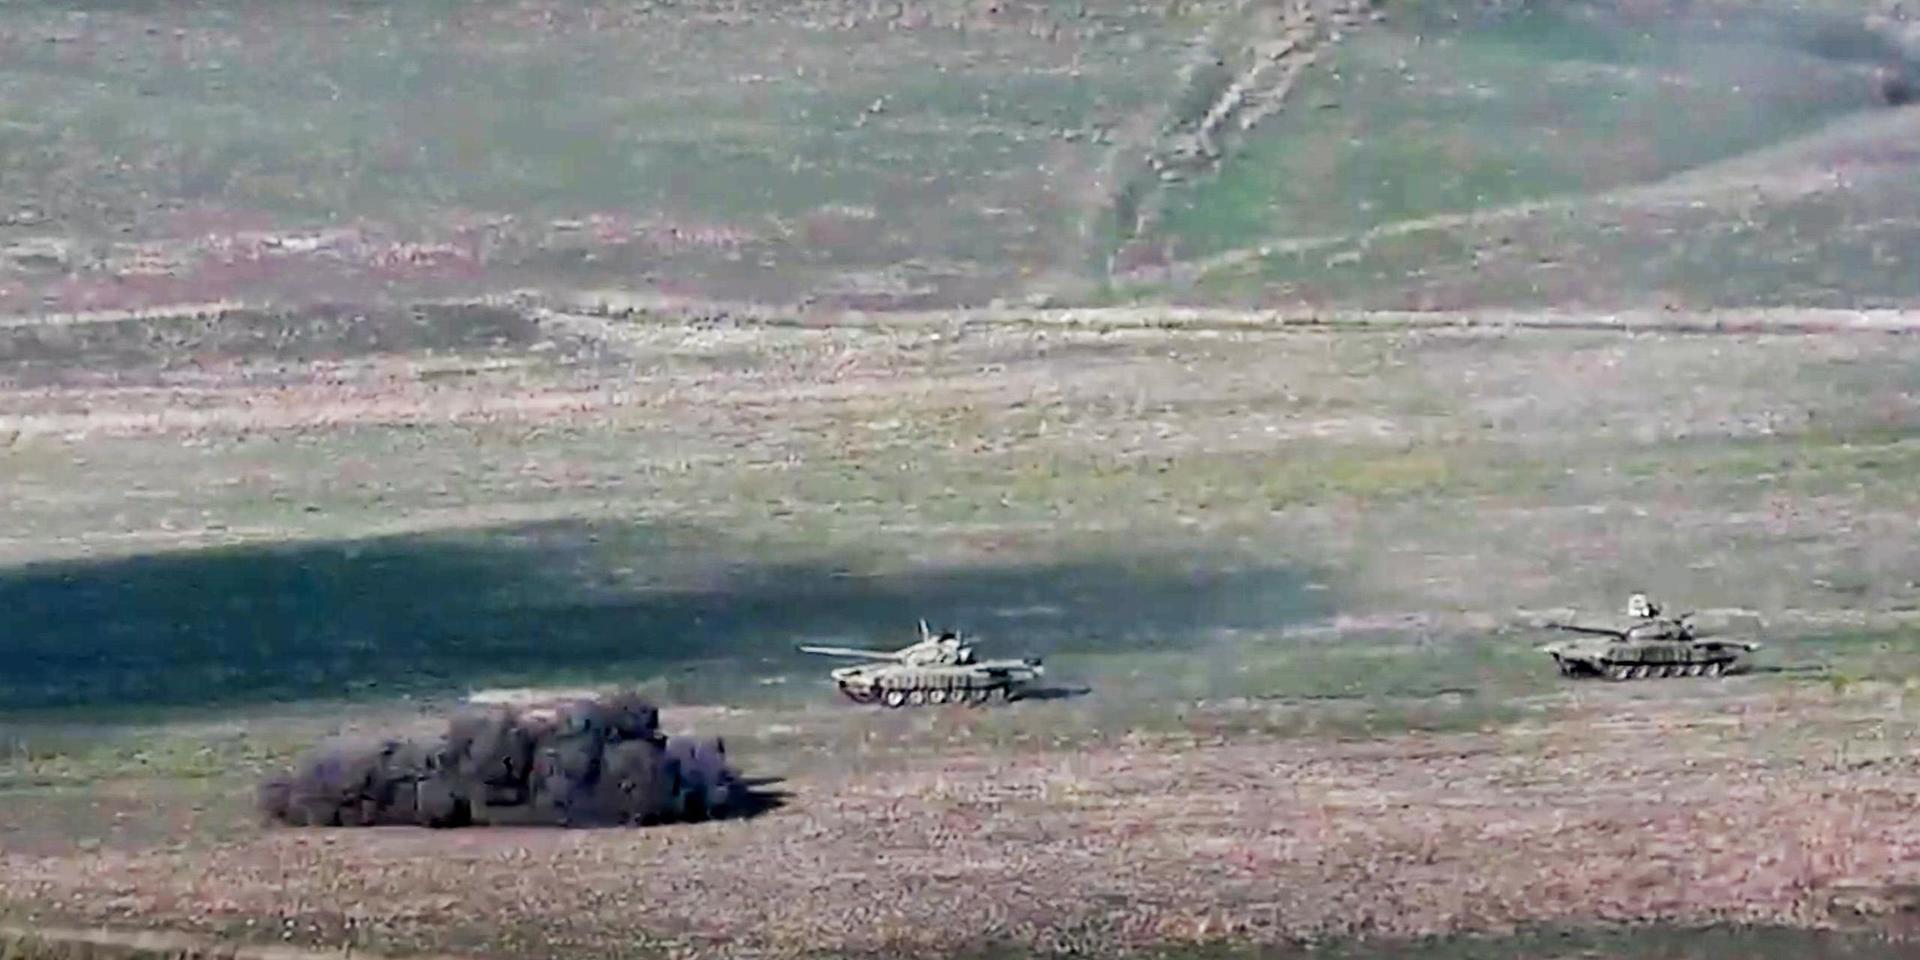 Armeniens försvarsdepartement har släppt bilder på hur Azerbajdzjanska stridsvagnar förstörs i striderna.